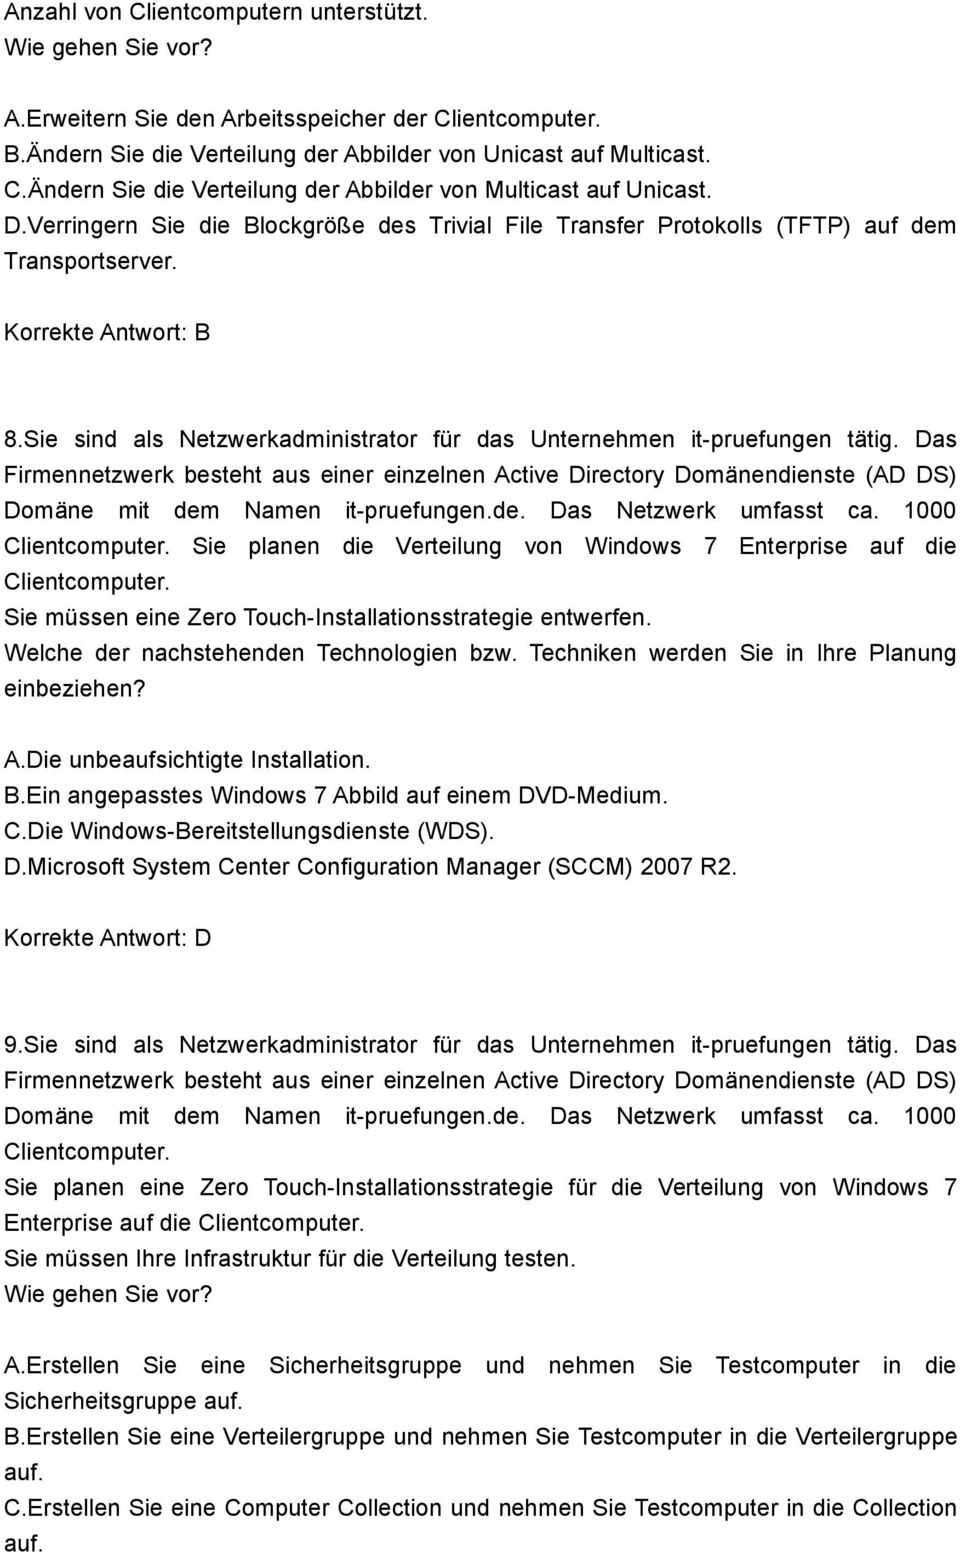 Das Domäne mit dem Namen it-pruefungen.de. Das Netzwerk umfasst ca. 1000 Clientcomputer. Sie planen die Verteilung von Windows 7 Enterprise auf die Clientcomputer.